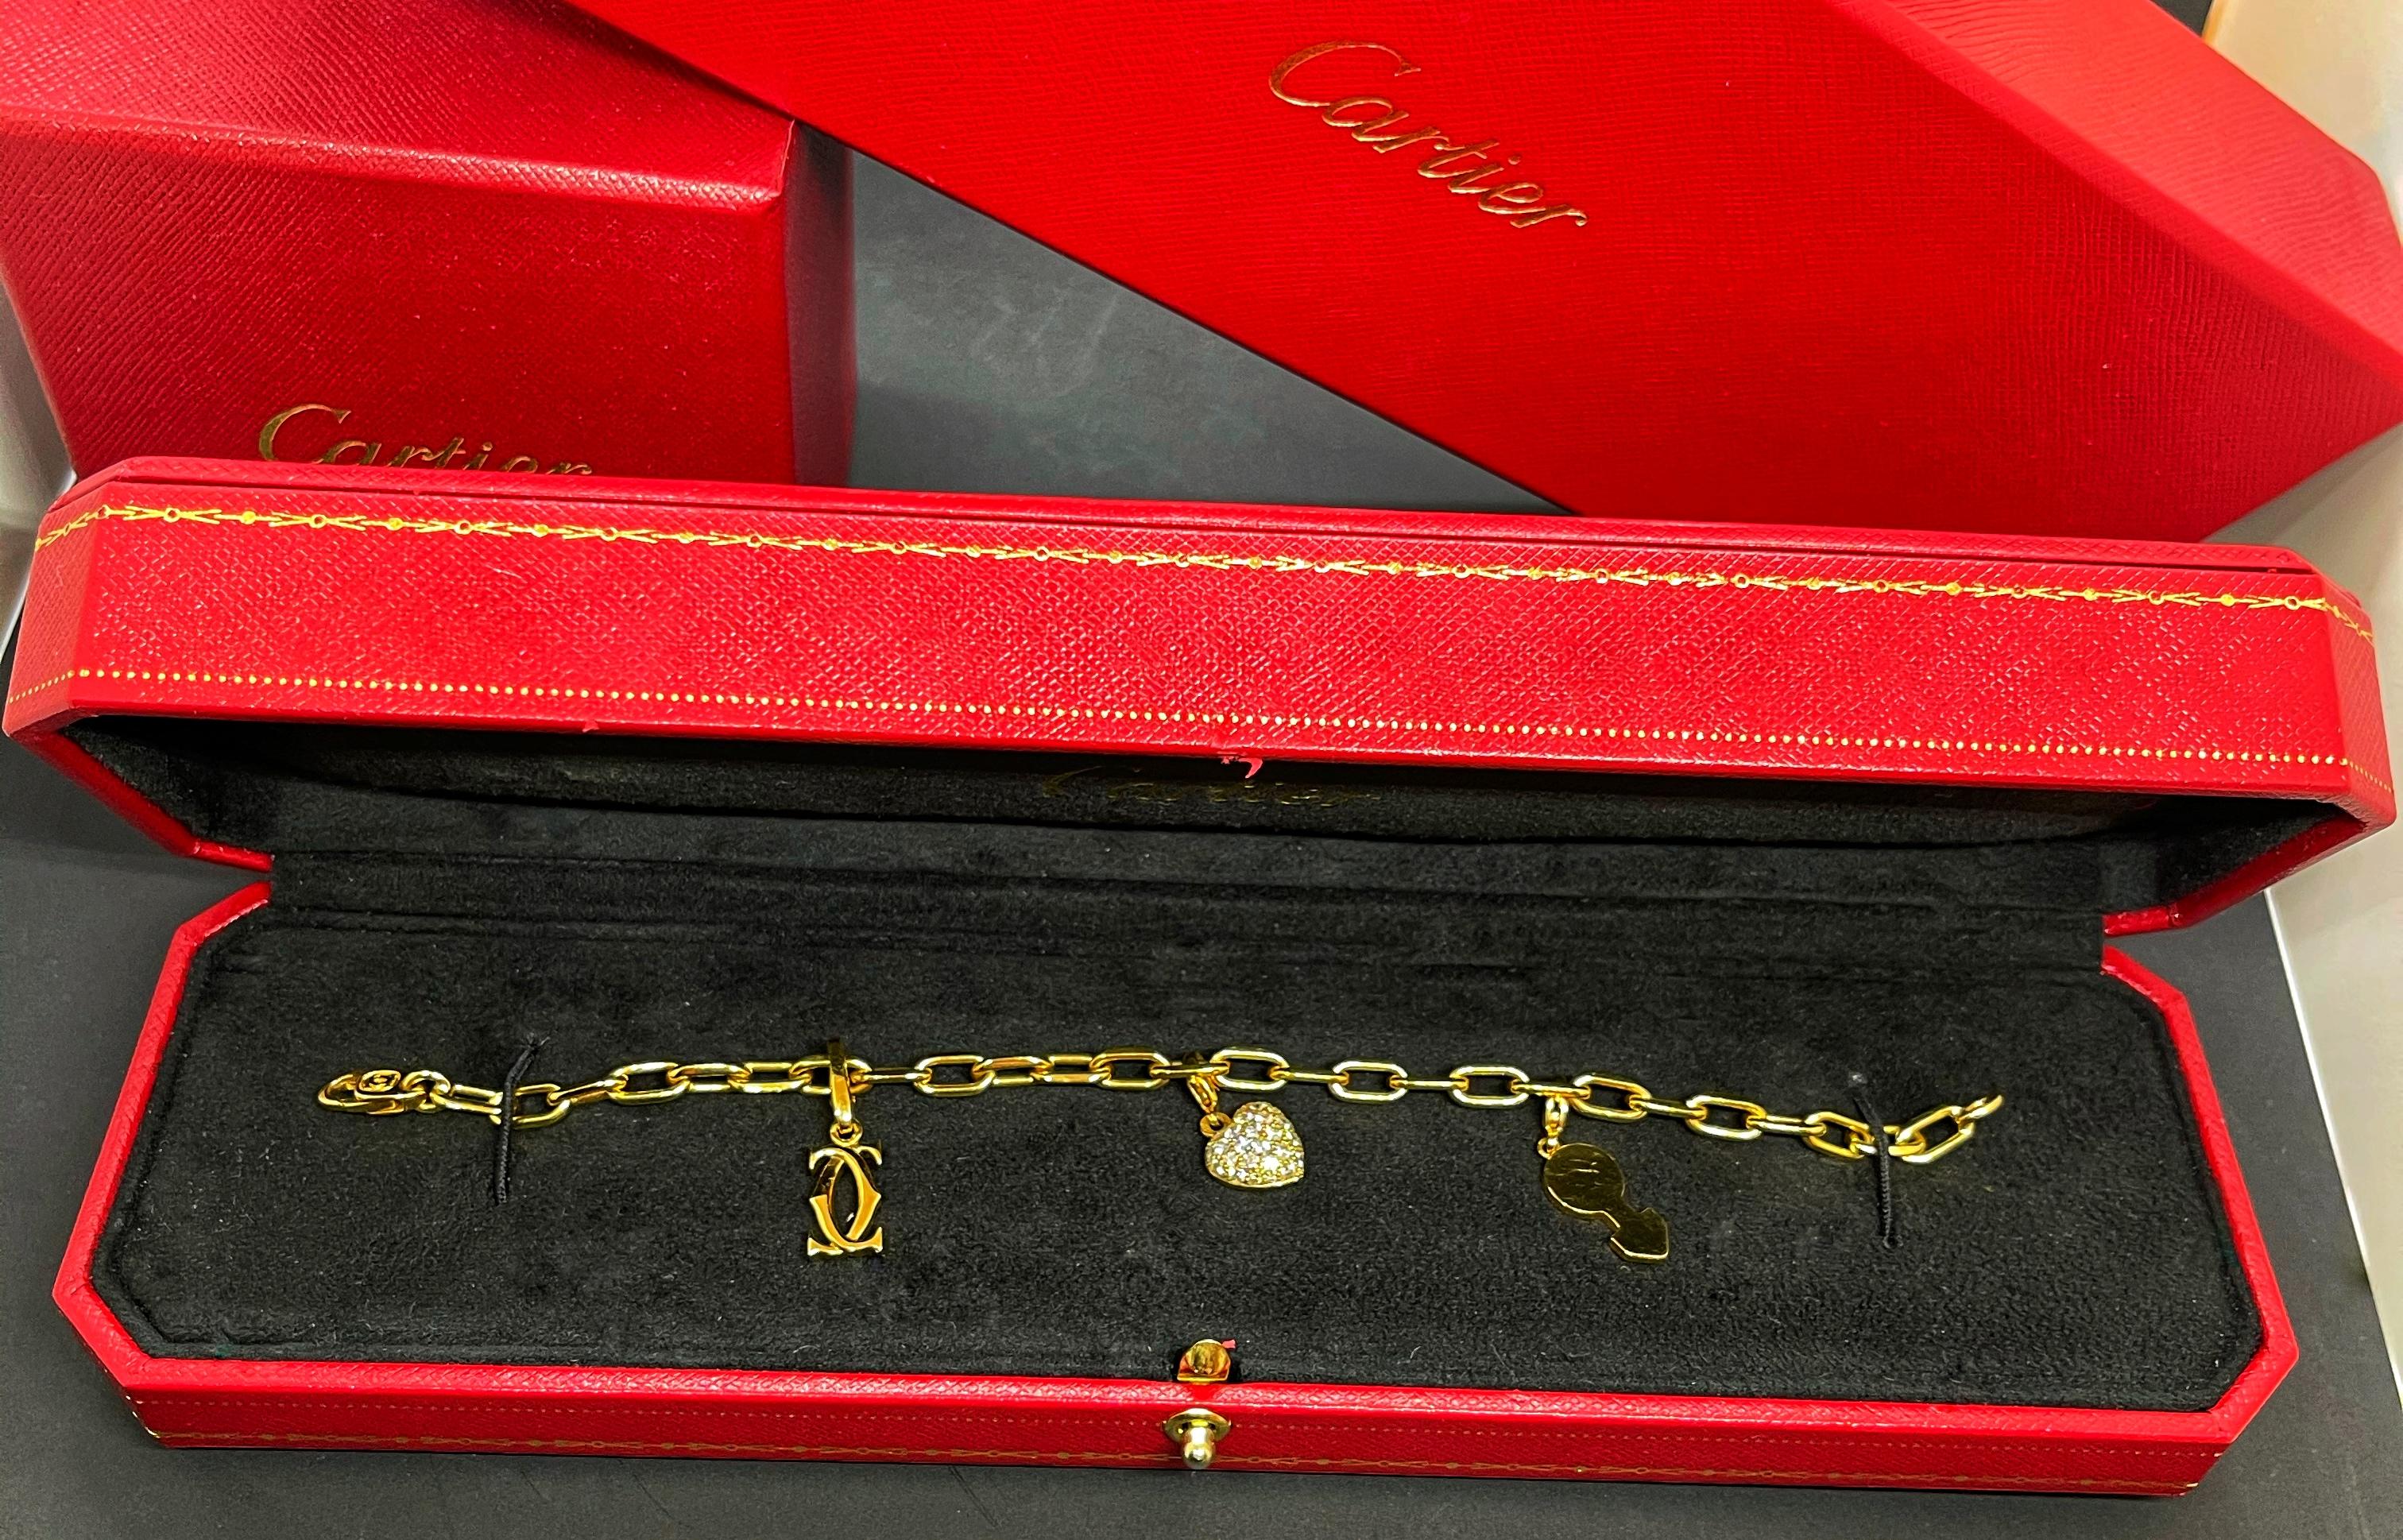 100% AUTHENTIQUE beau bracelet à breloques de Cartier

Réalisé en or 18 carats, ce bracelet à chaîne trapue a été conçu par la légendaire maison de joaillerie française Cartier. La chaîne, le bracelet orné de trois charmes représentaient les images